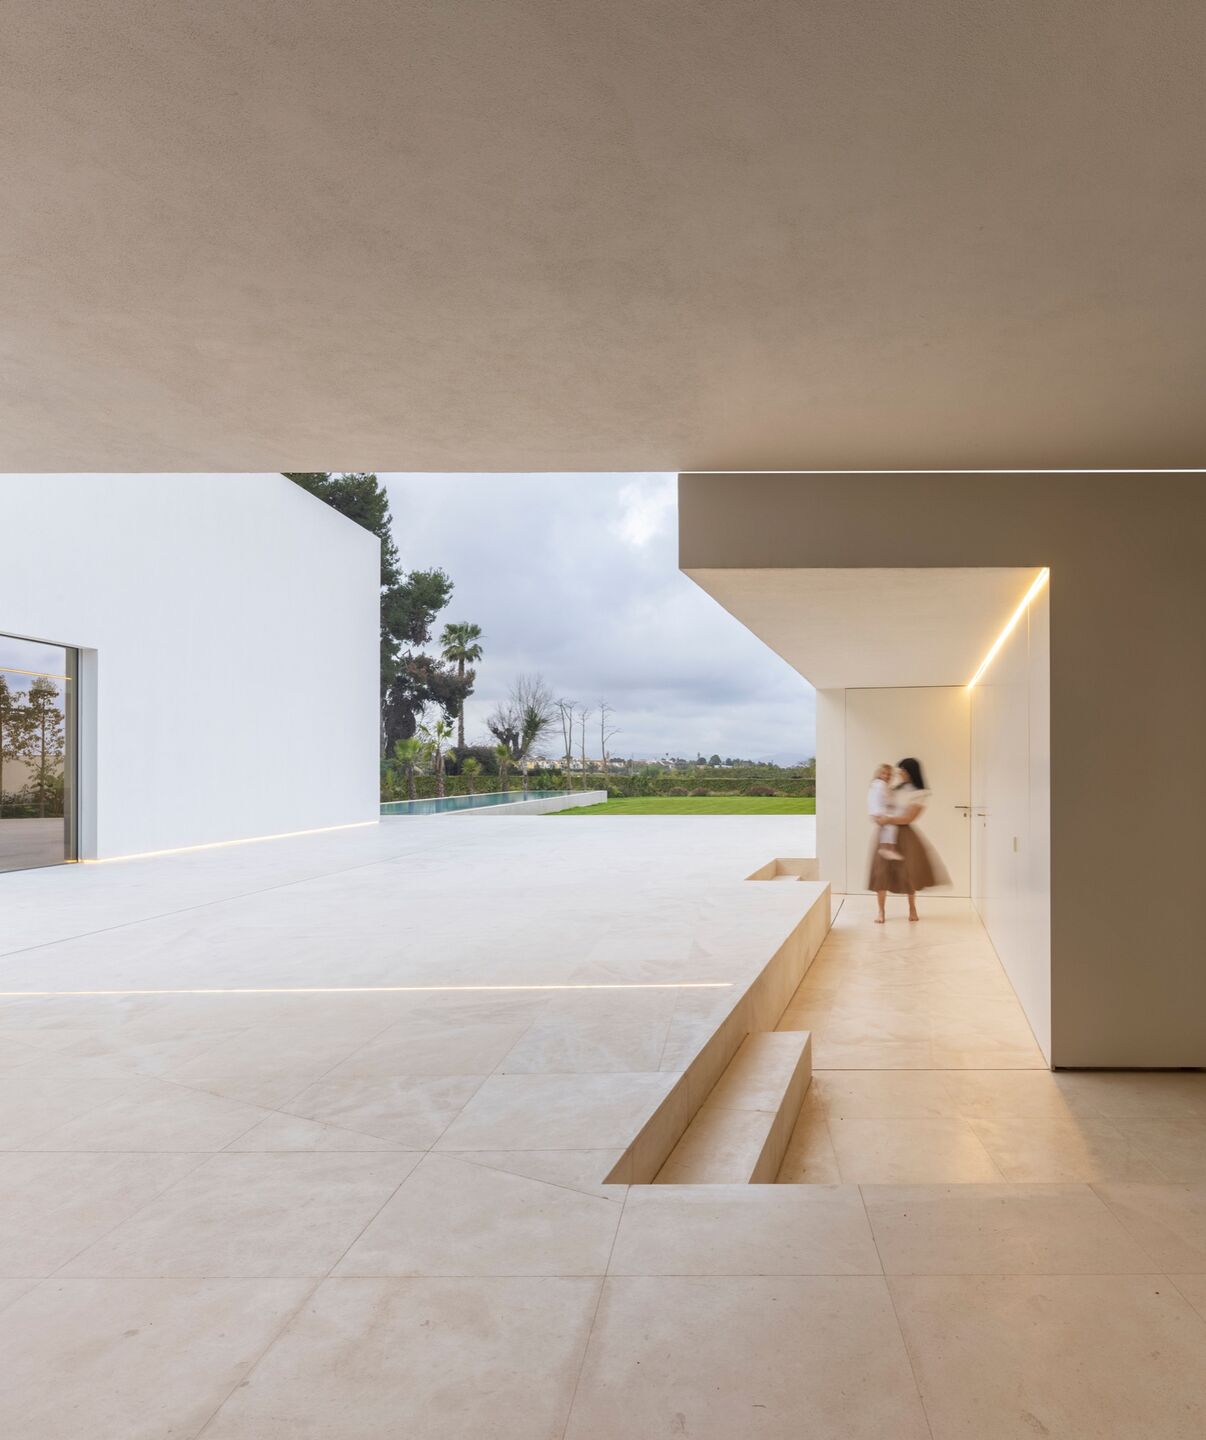 别墅设计,别墅设计案例,Fran Silvestre Arquitectos,西班牙,国外别墅设计案例,巴伦西亚,白色别墅,极简主义,极简风格